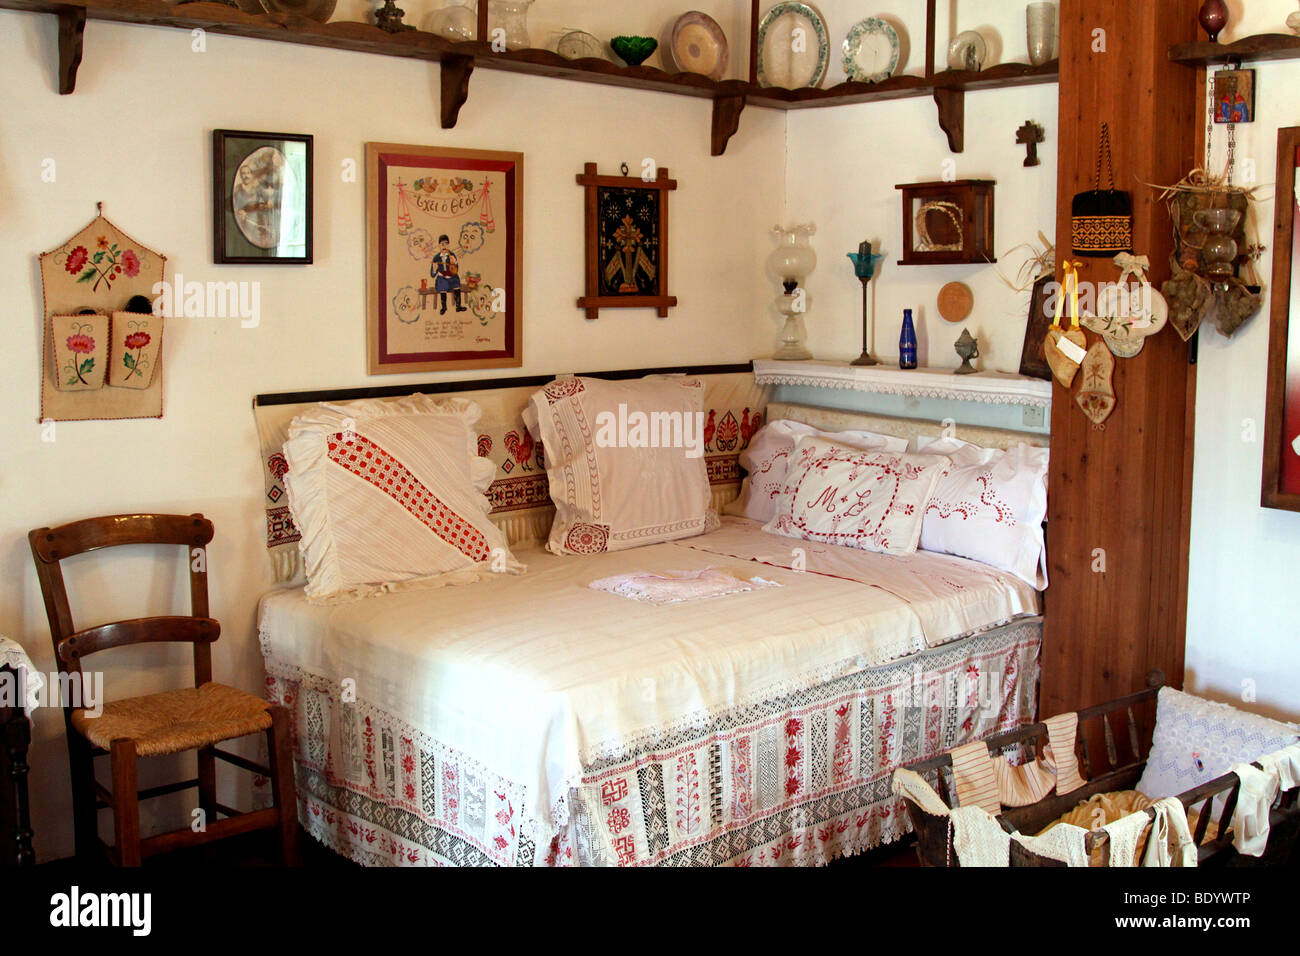 Hochzeit-Bett, Freilichtmuseum Lychnostatis, Museum für das traditionelle kretische Leben, Hersonissos, Kreta, Griechenland, Europa Stockfoto